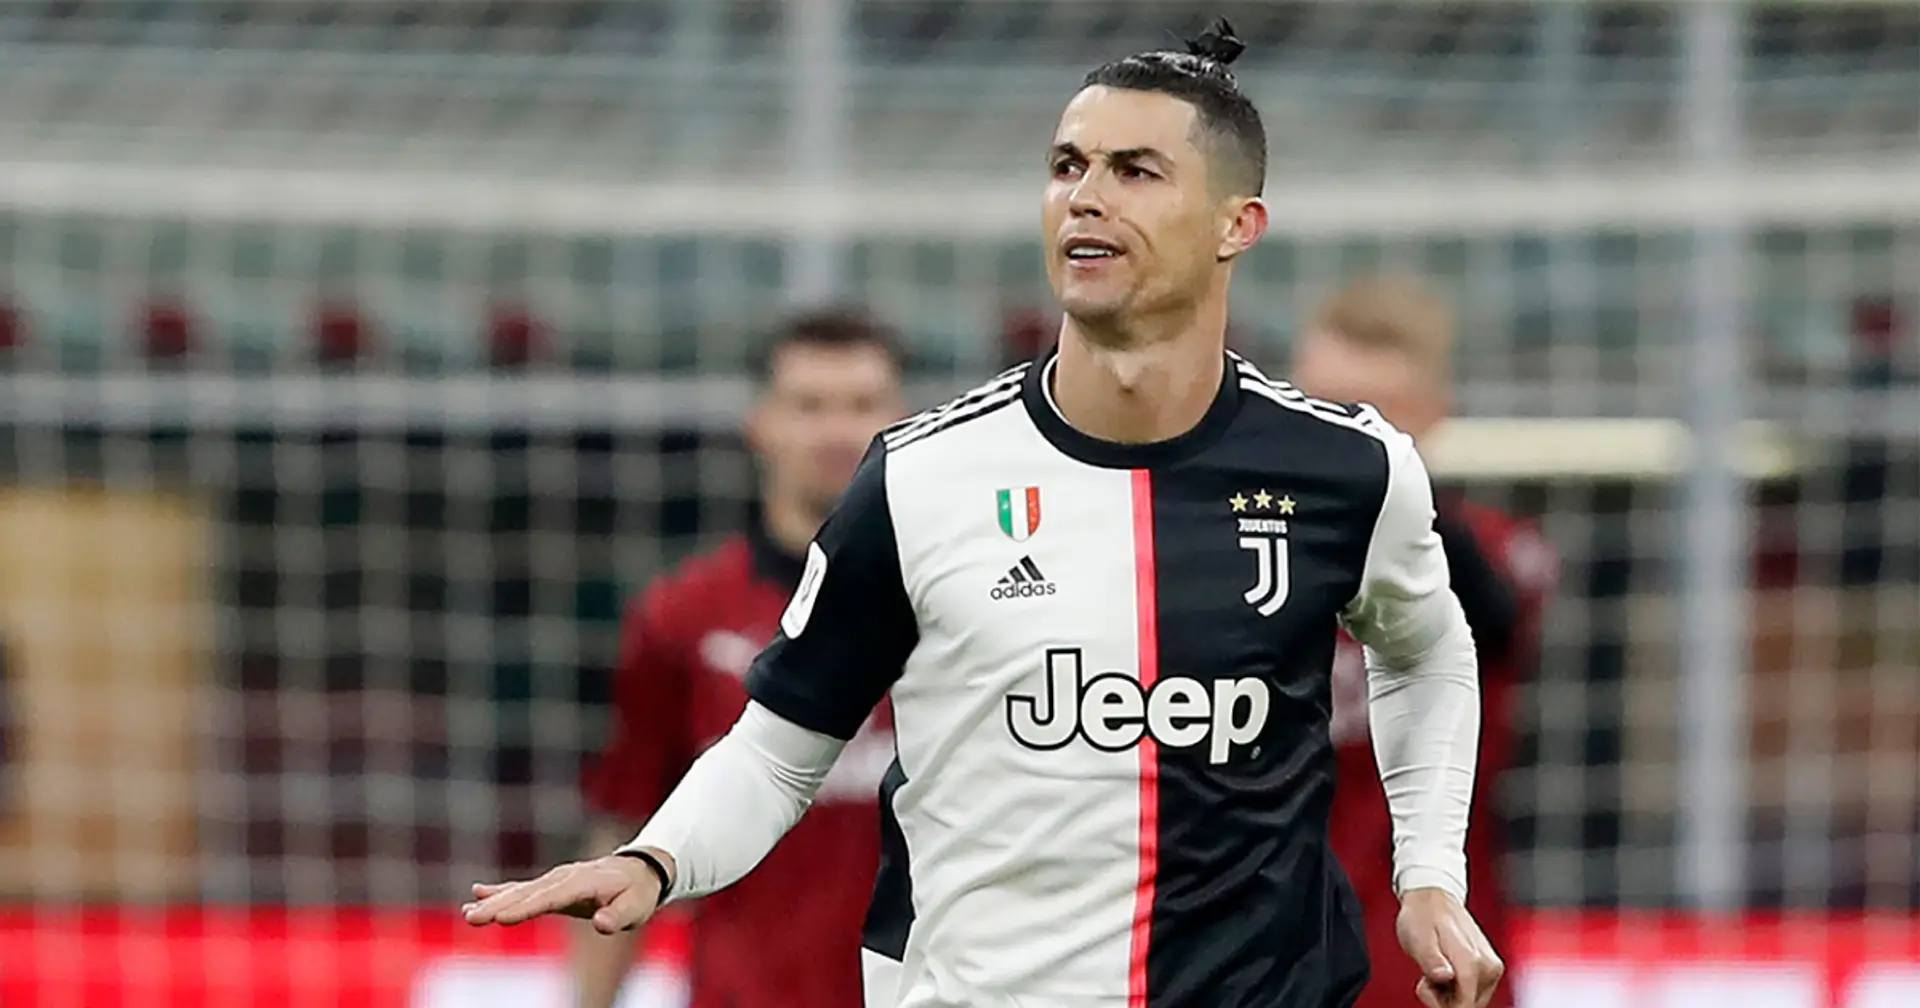 Cristiano Ronaldo poursuit la Juventus et réclame plus de 17 millions de livres sterling de salaires impayés